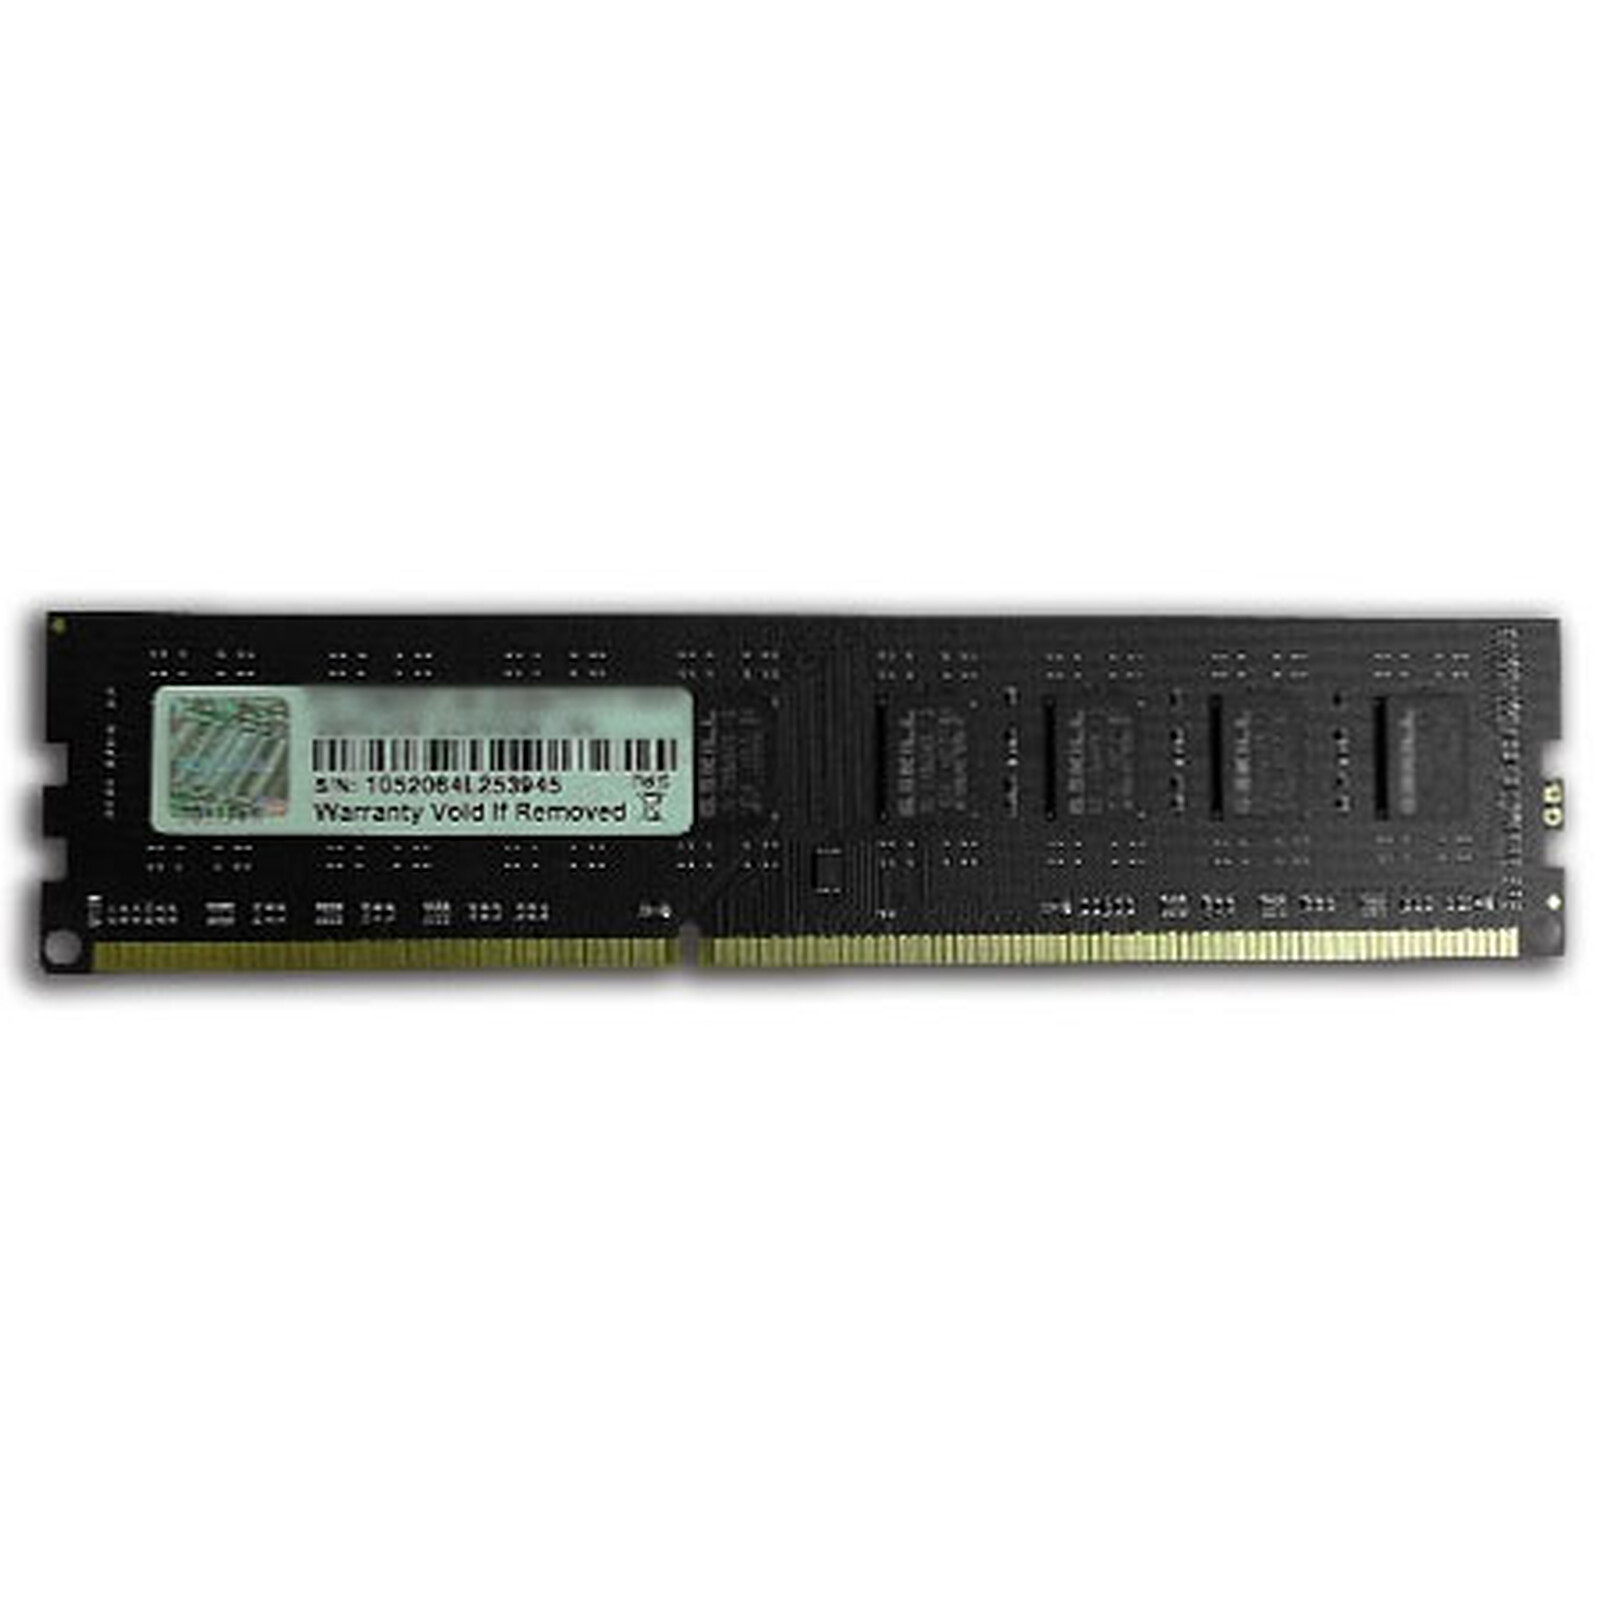 Perfecto Absurdo isla G.Skill NS Series 2 GB DDR3-SDRAM PC3-10600 - Memoria PC G.Skill en LDLC